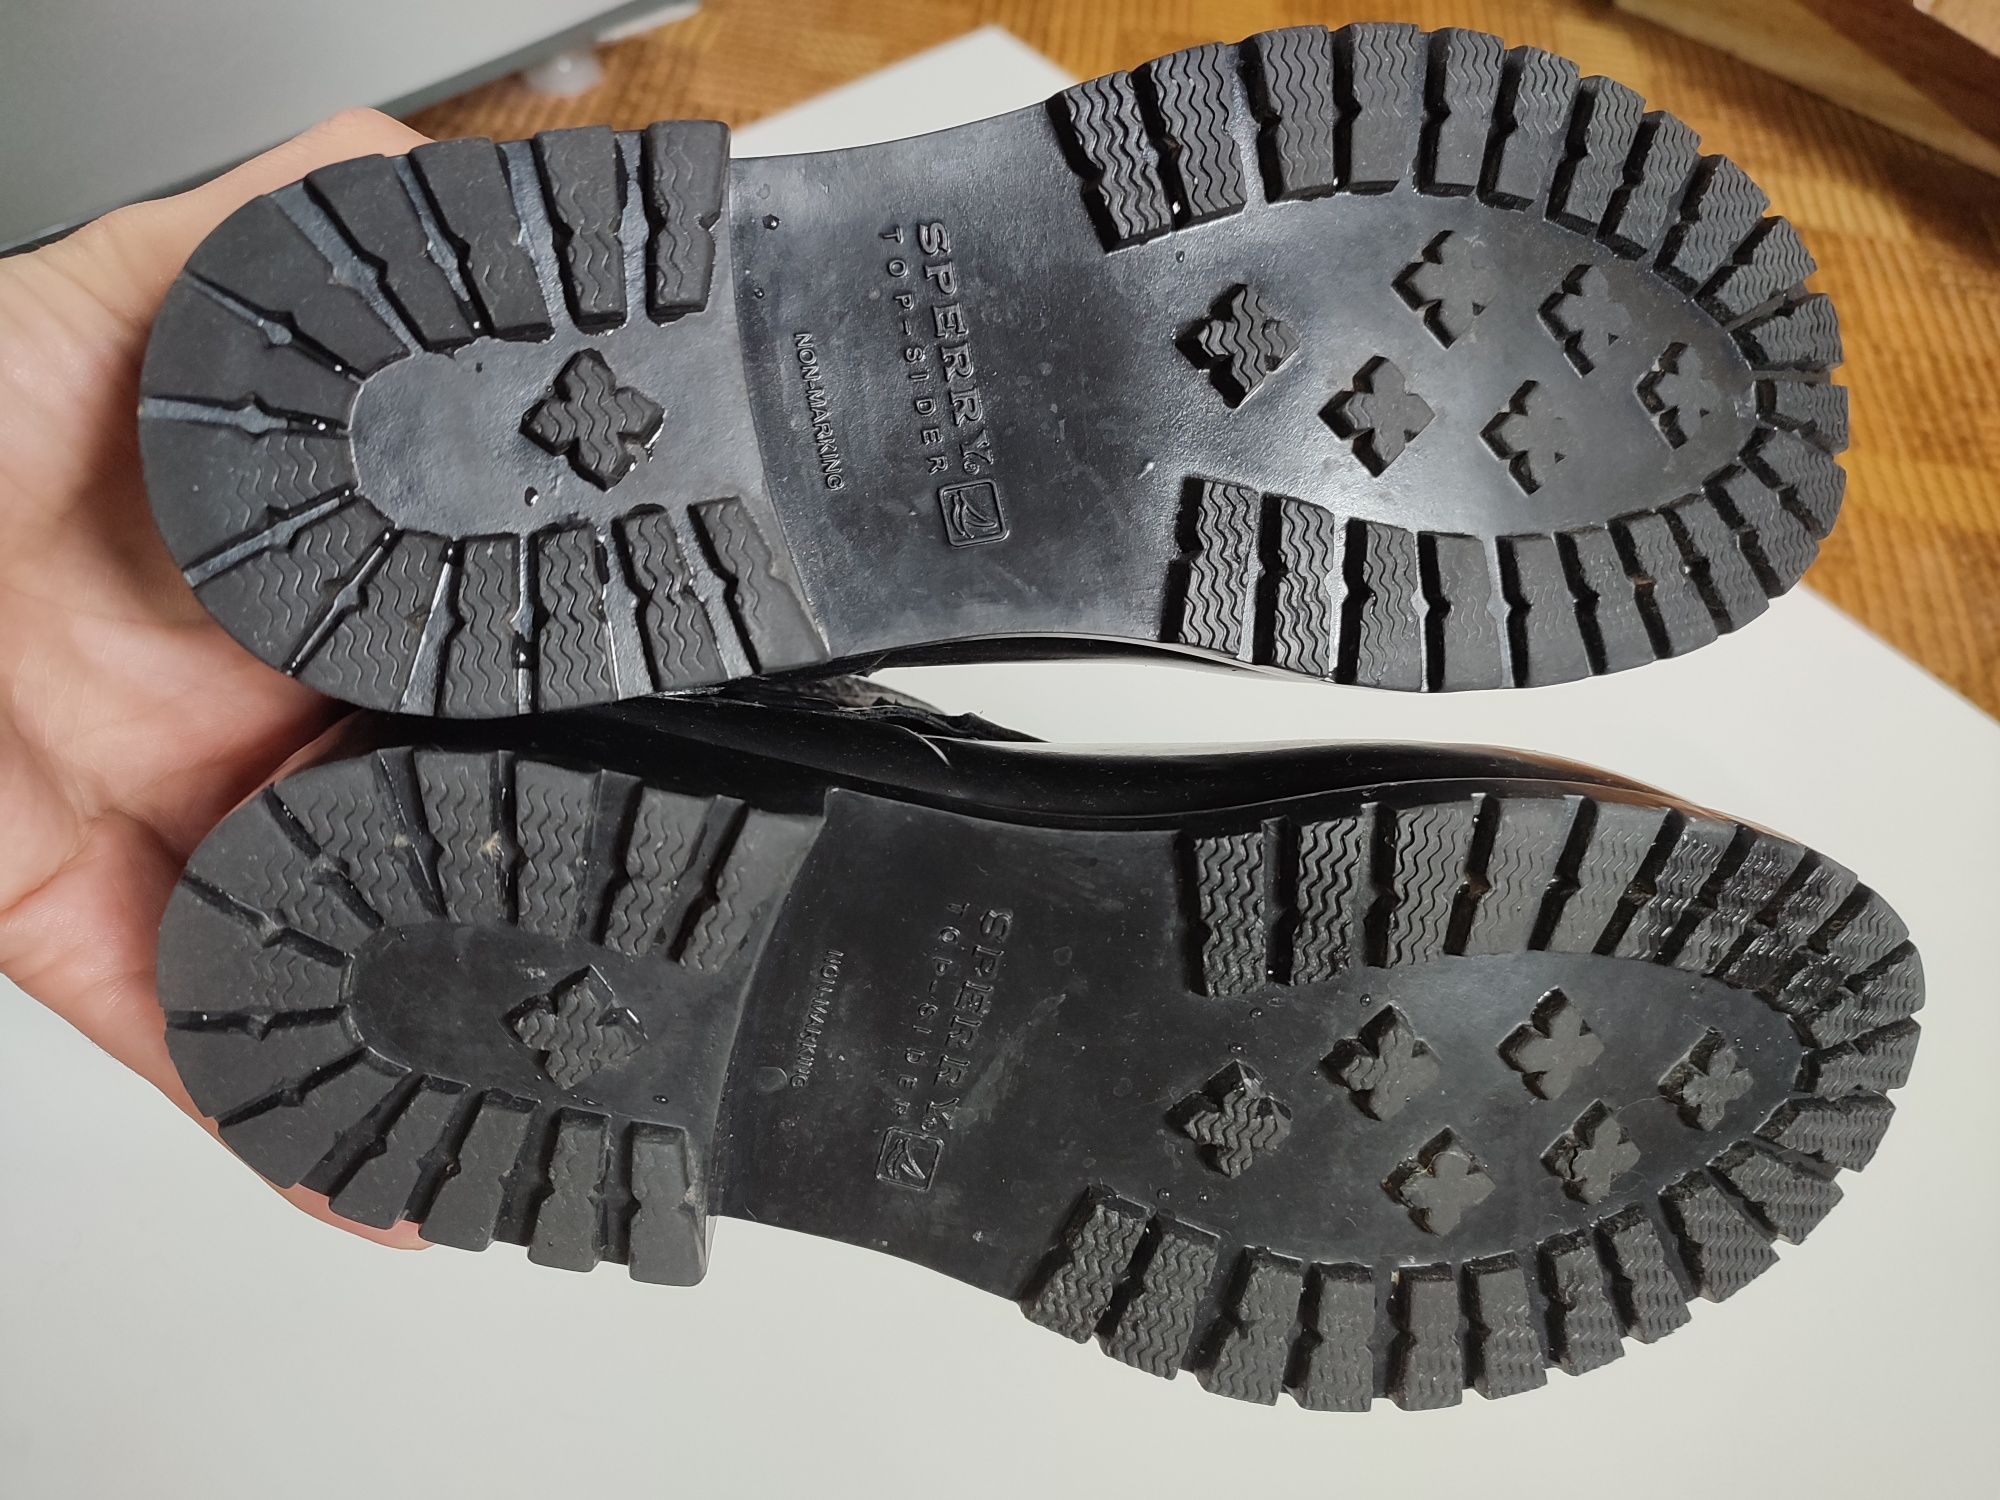 резиновые сапоги чоботи Sperry top-sider / 37р - 24,5см